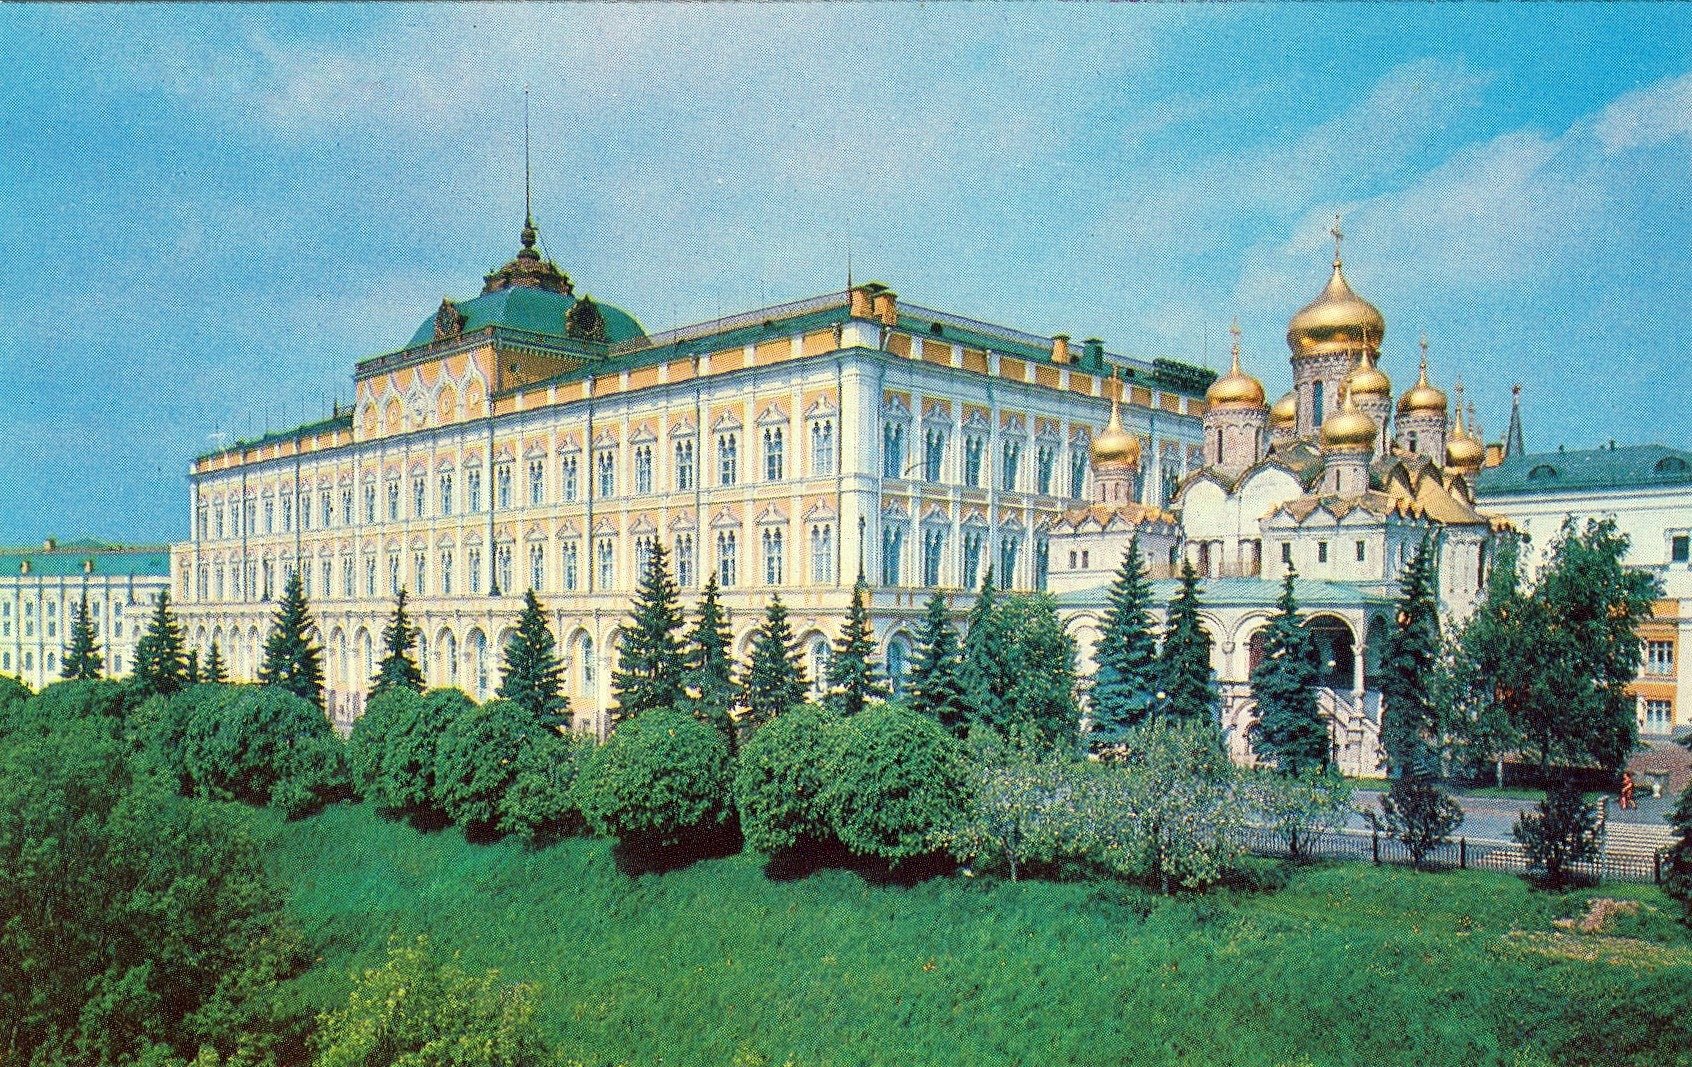 Резиденция президента в москве фото